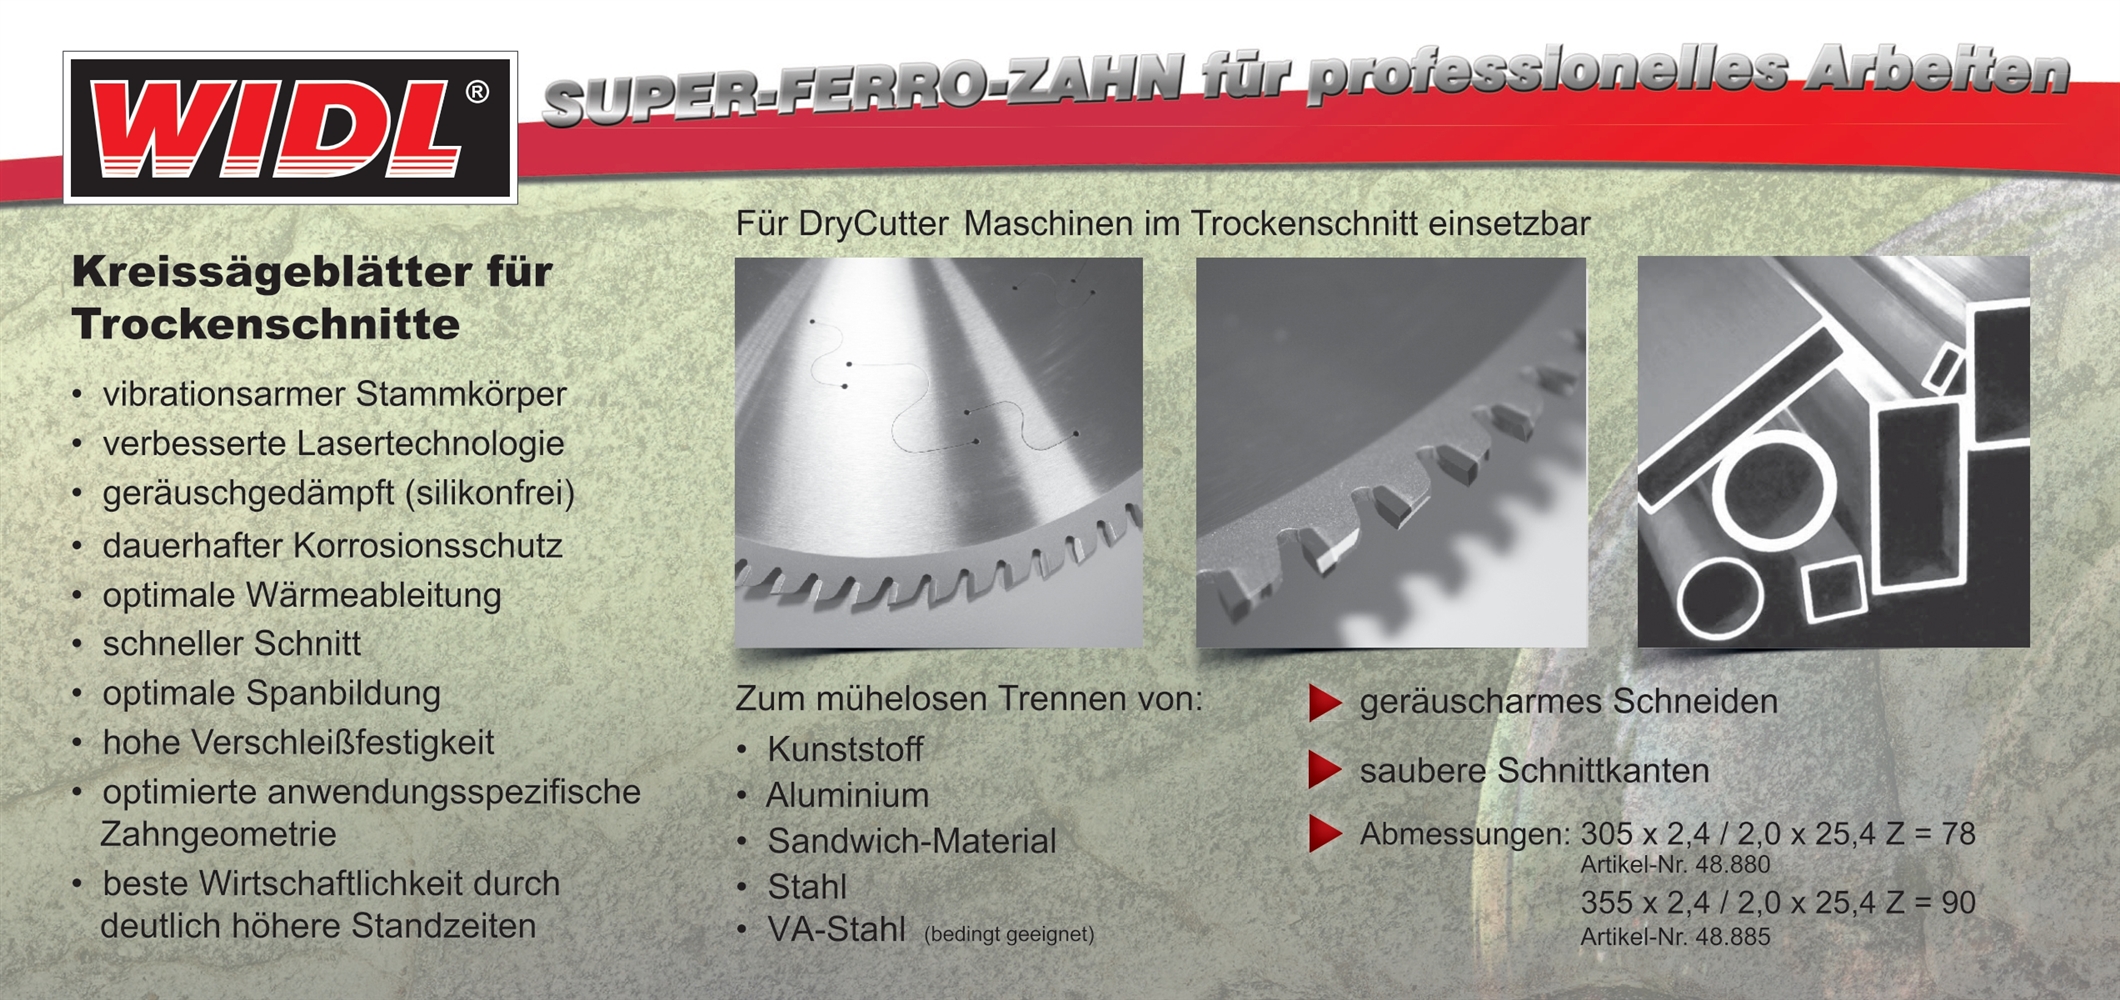 Flyer SFZ Kreissägeblatt für DryCutter Maschinen